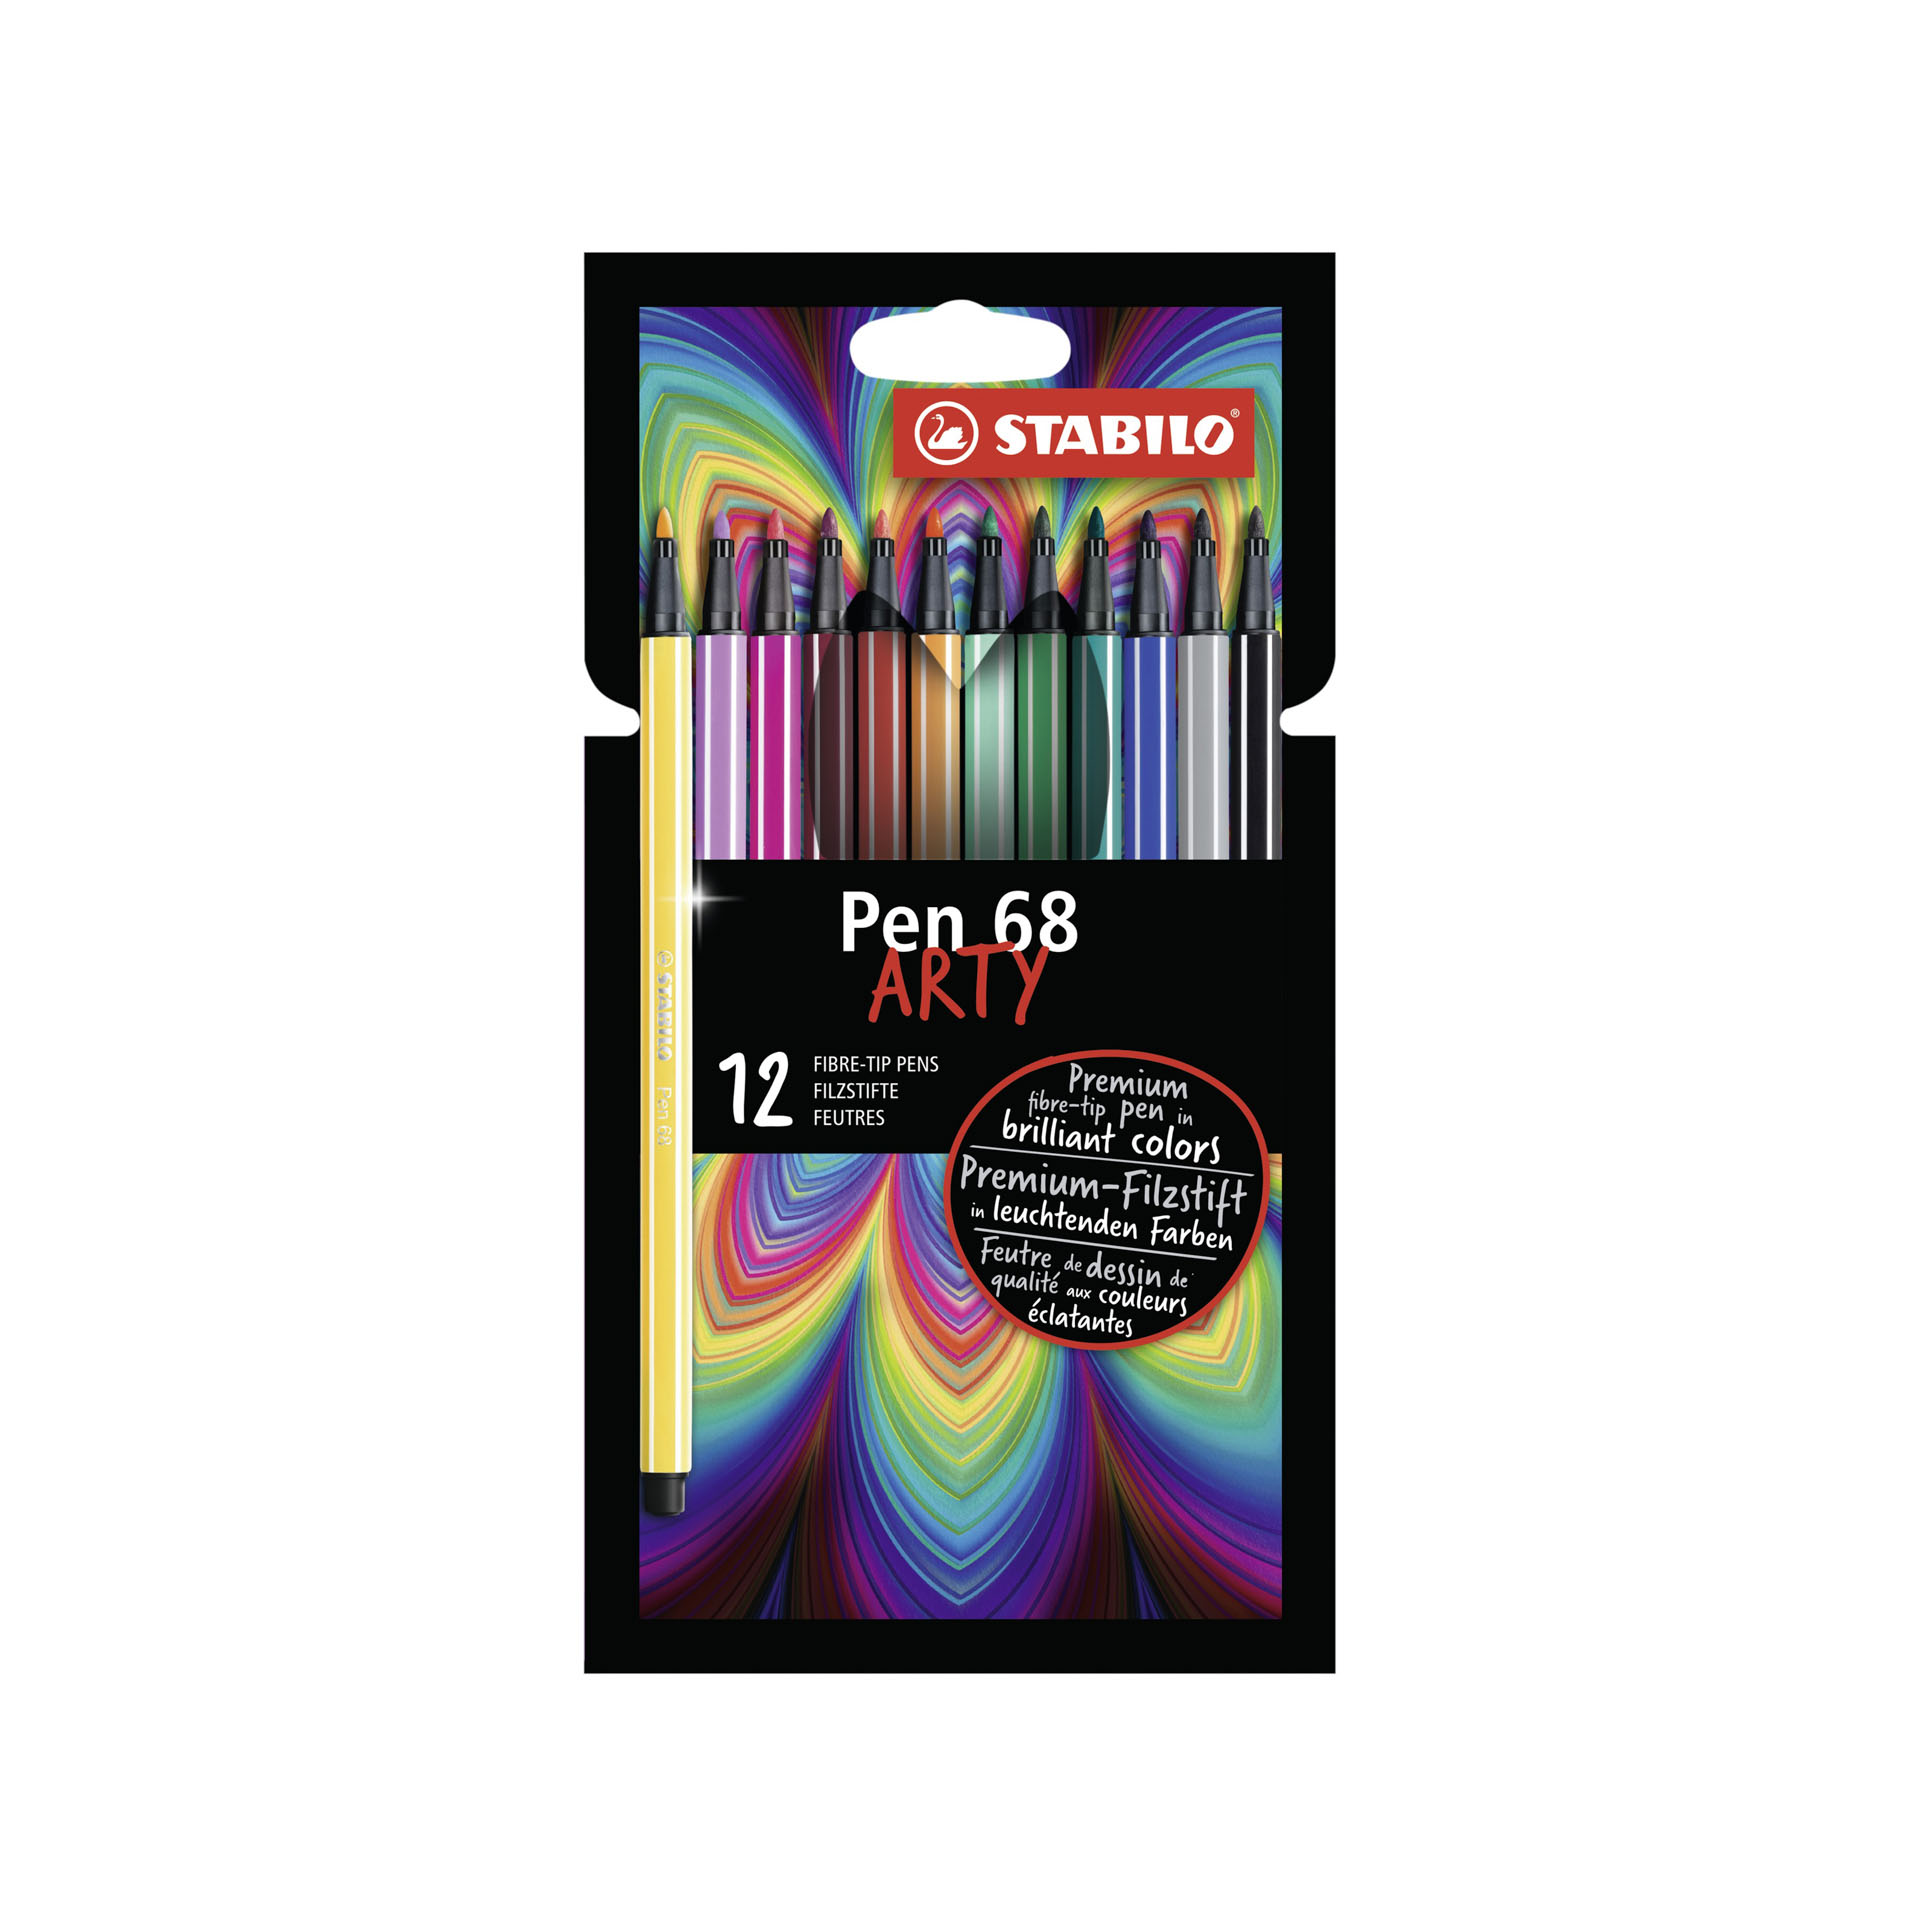 STABILO Pen 68 - ARTY - Astuccio da 12 con appendino - 12 colori assortiti, , large